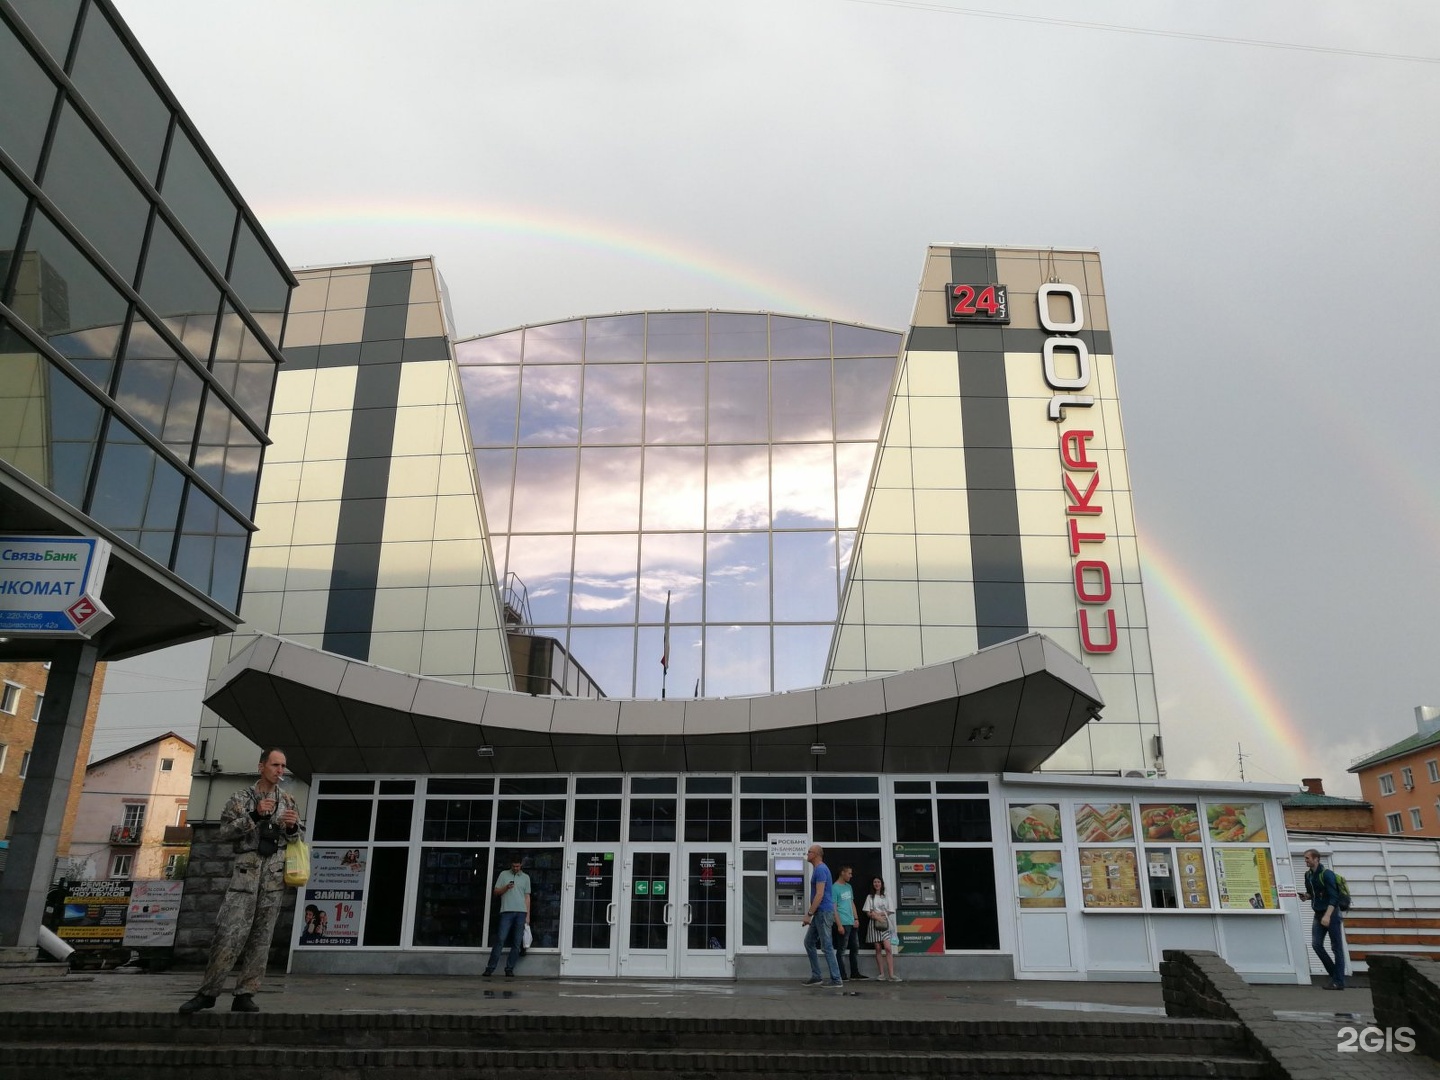 владивосток торговые центры фото